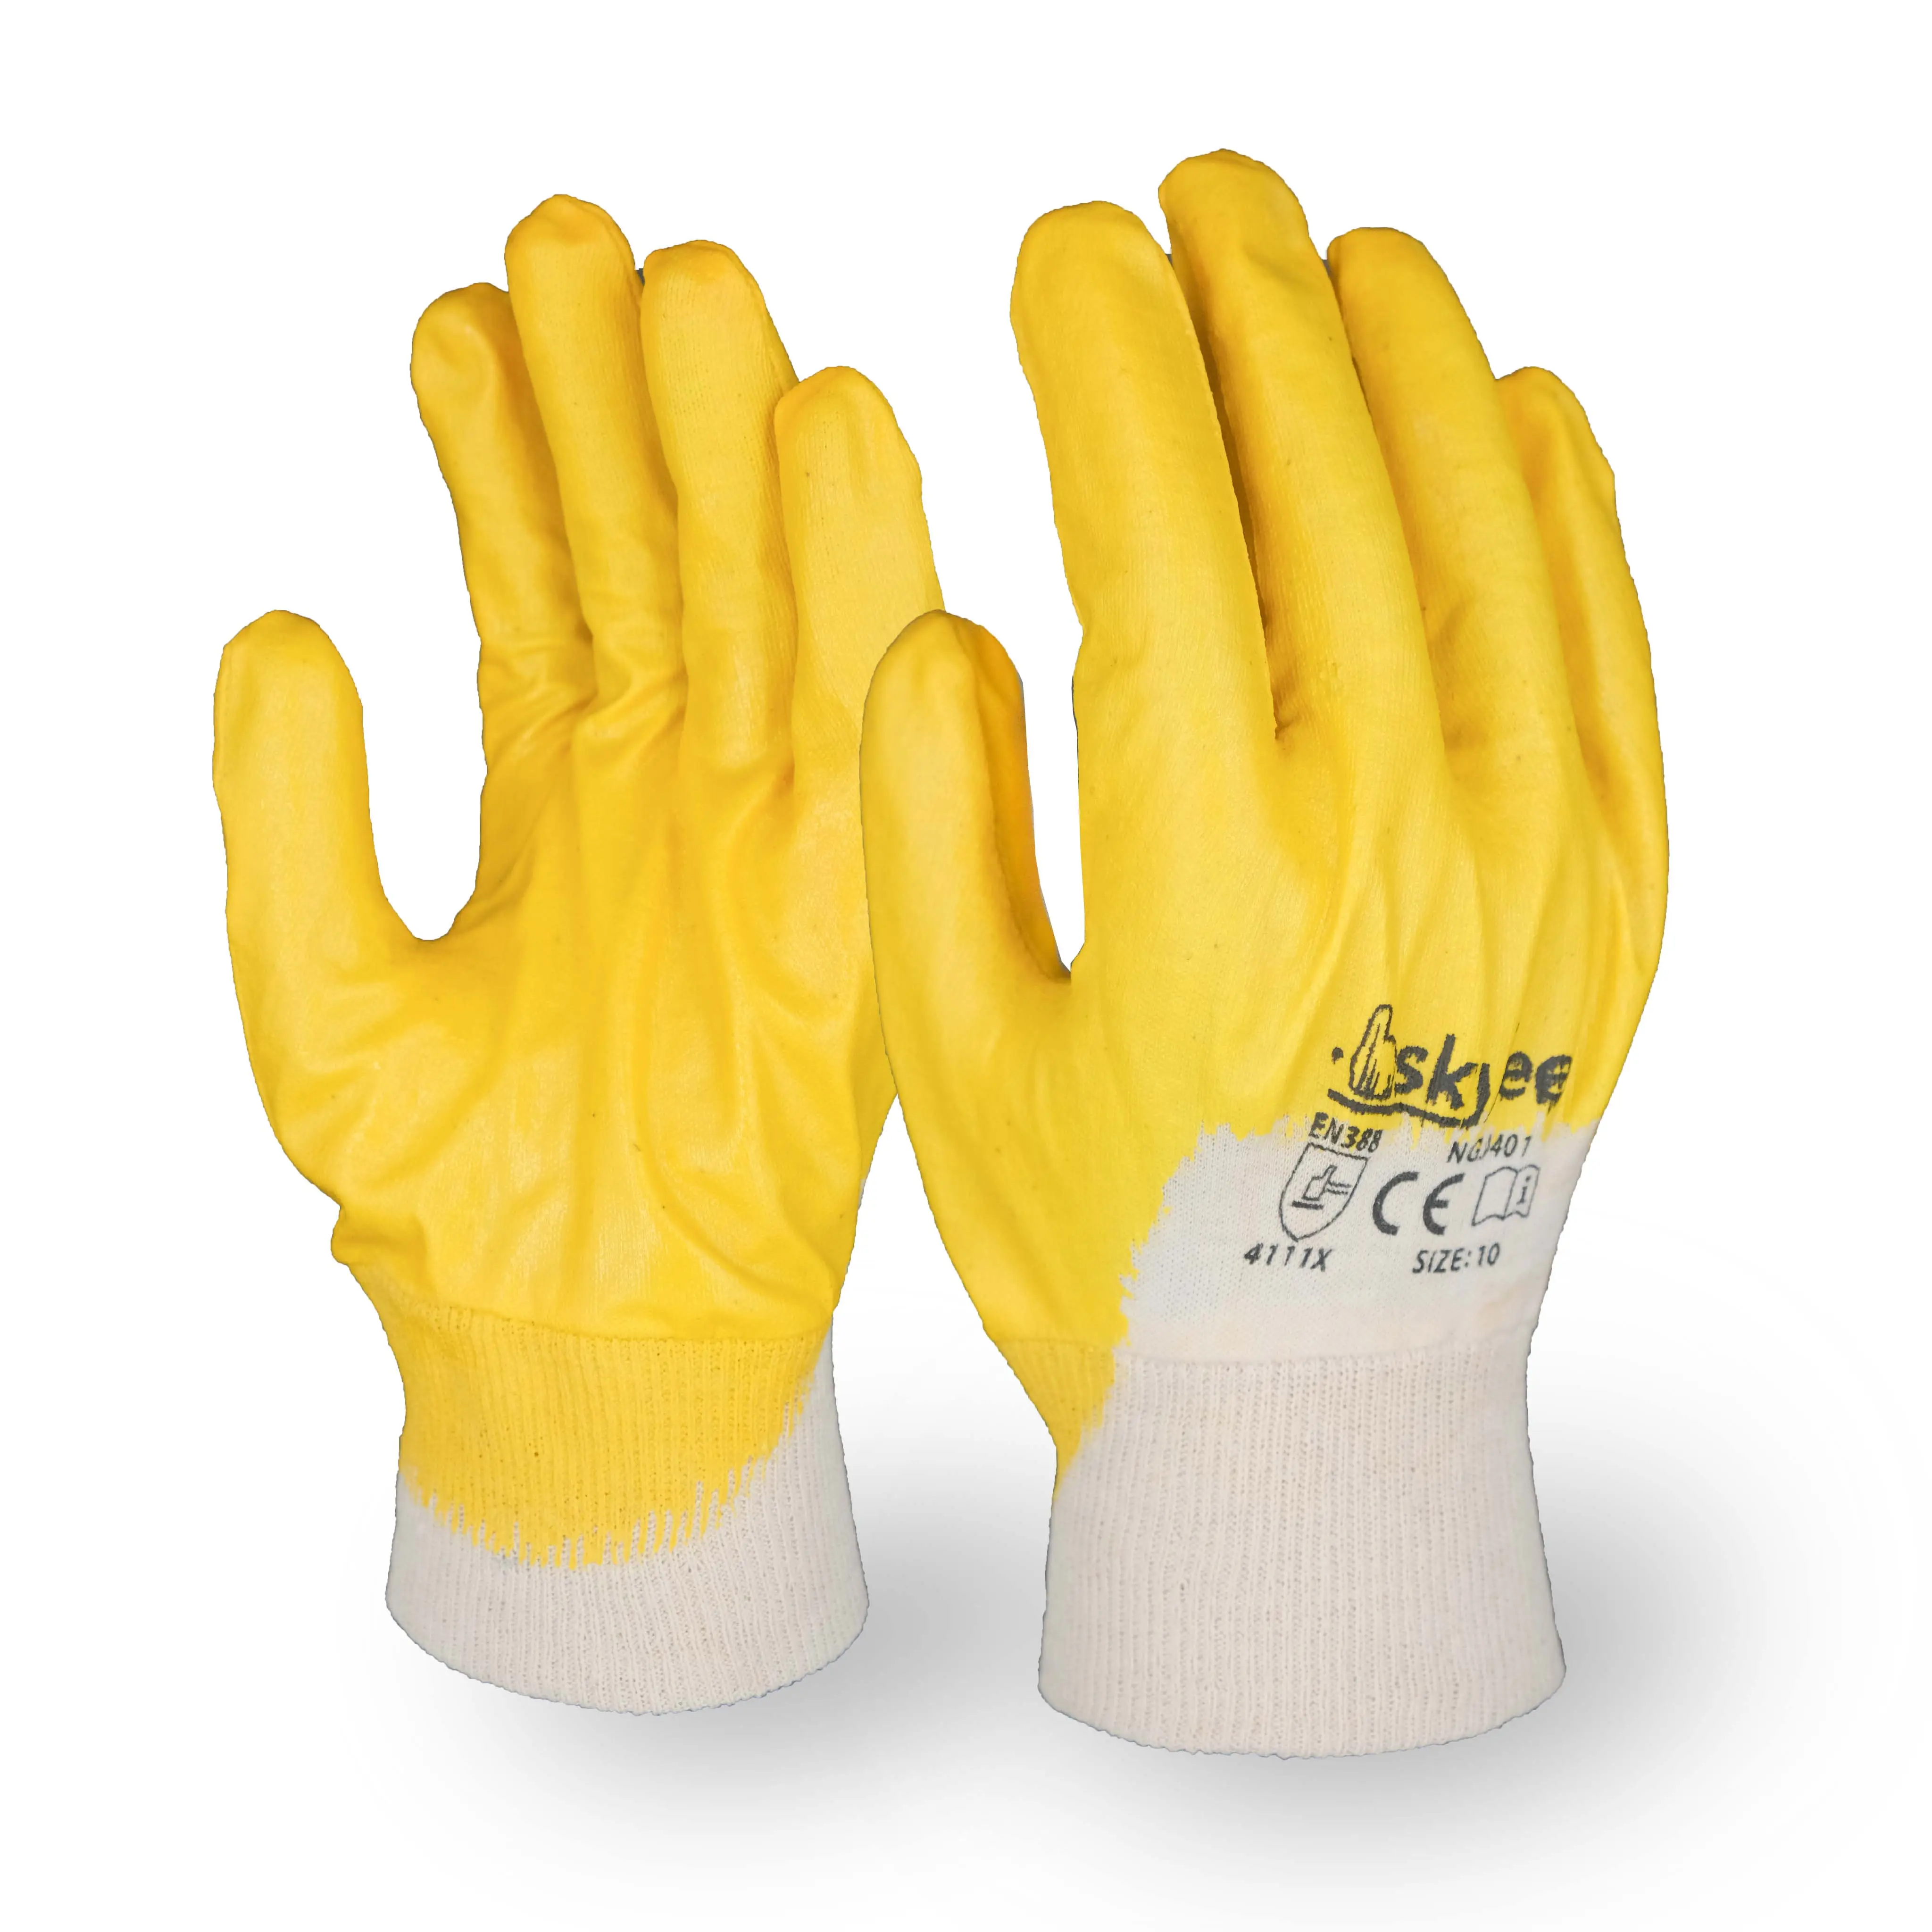 SKYEE personalizado nitrilo 3/4 recubierto de algodón resistente a productos químicos proteger mano seguridad trabajo construcción guantes para industrial